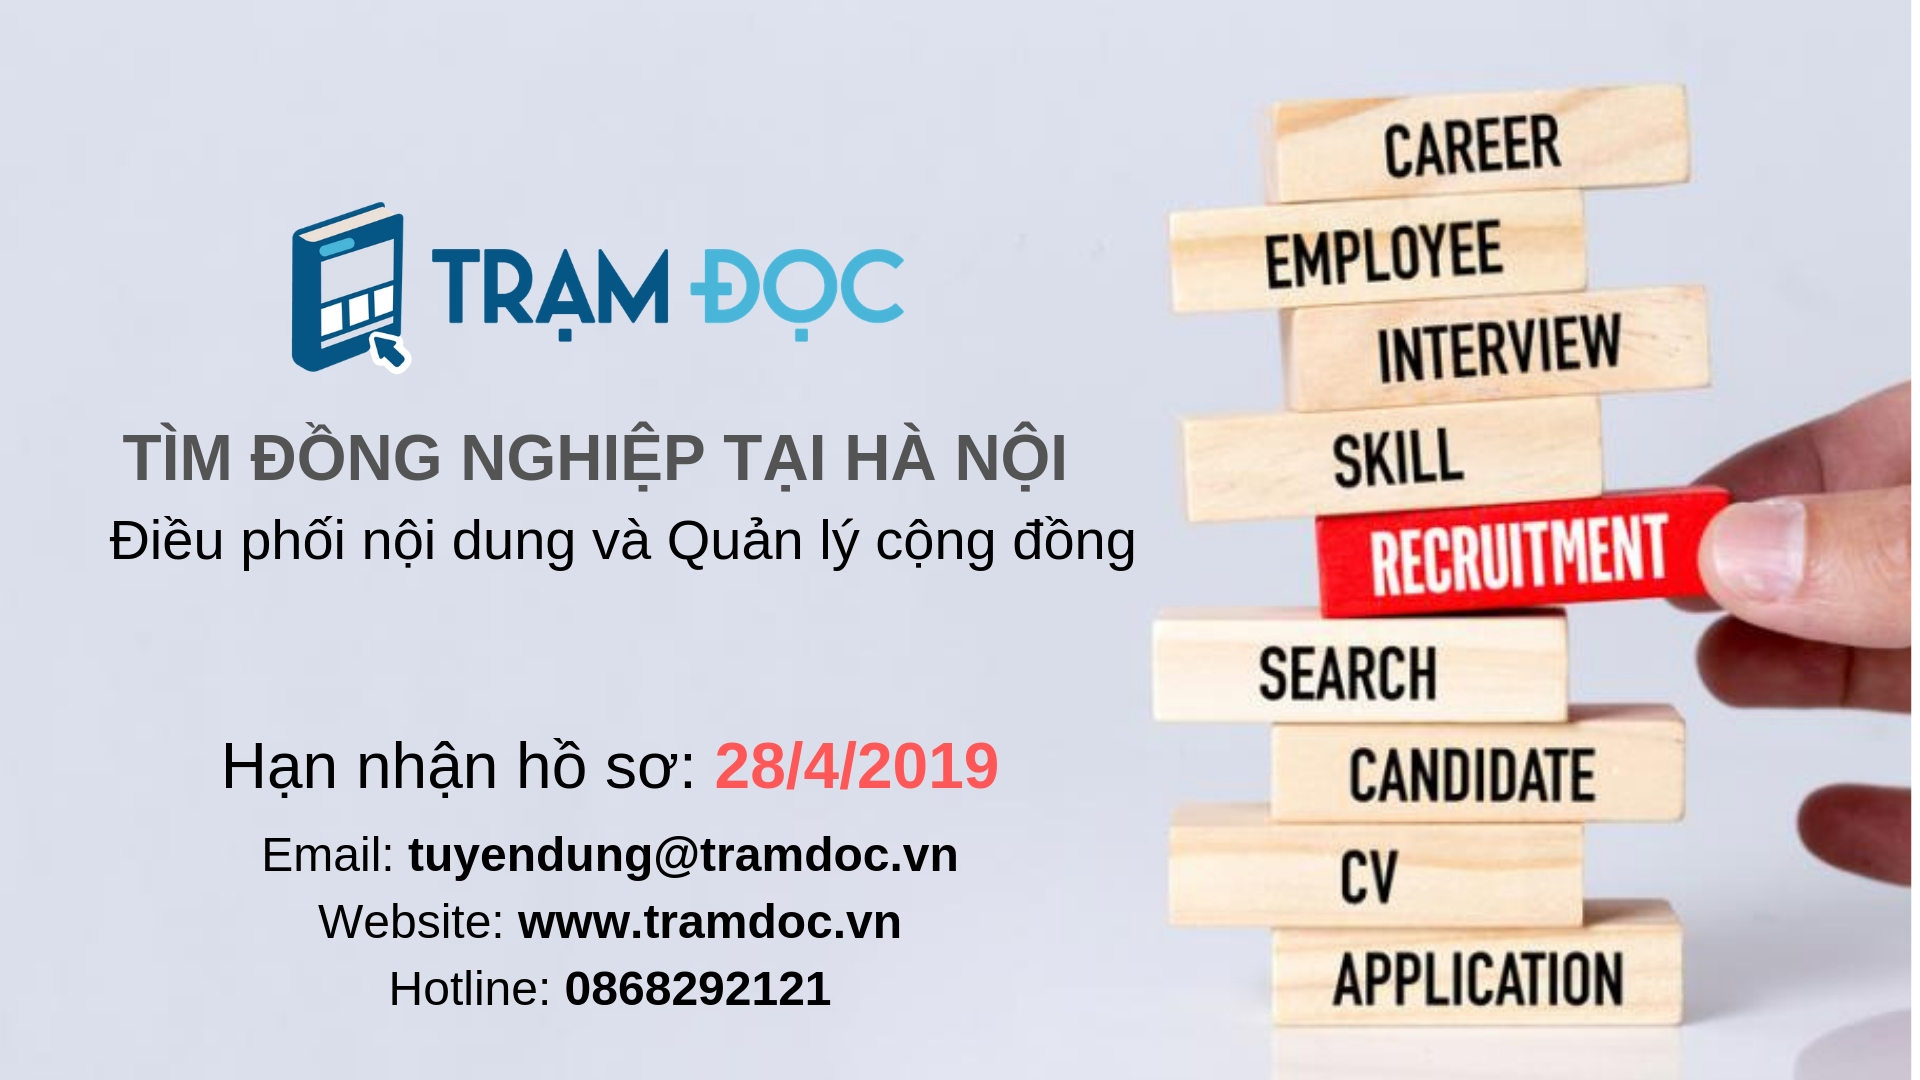 Trạm Đọc tìm đồng nghiệp tại Hà Nội [Nhận CV đến hết ngày 28/4]